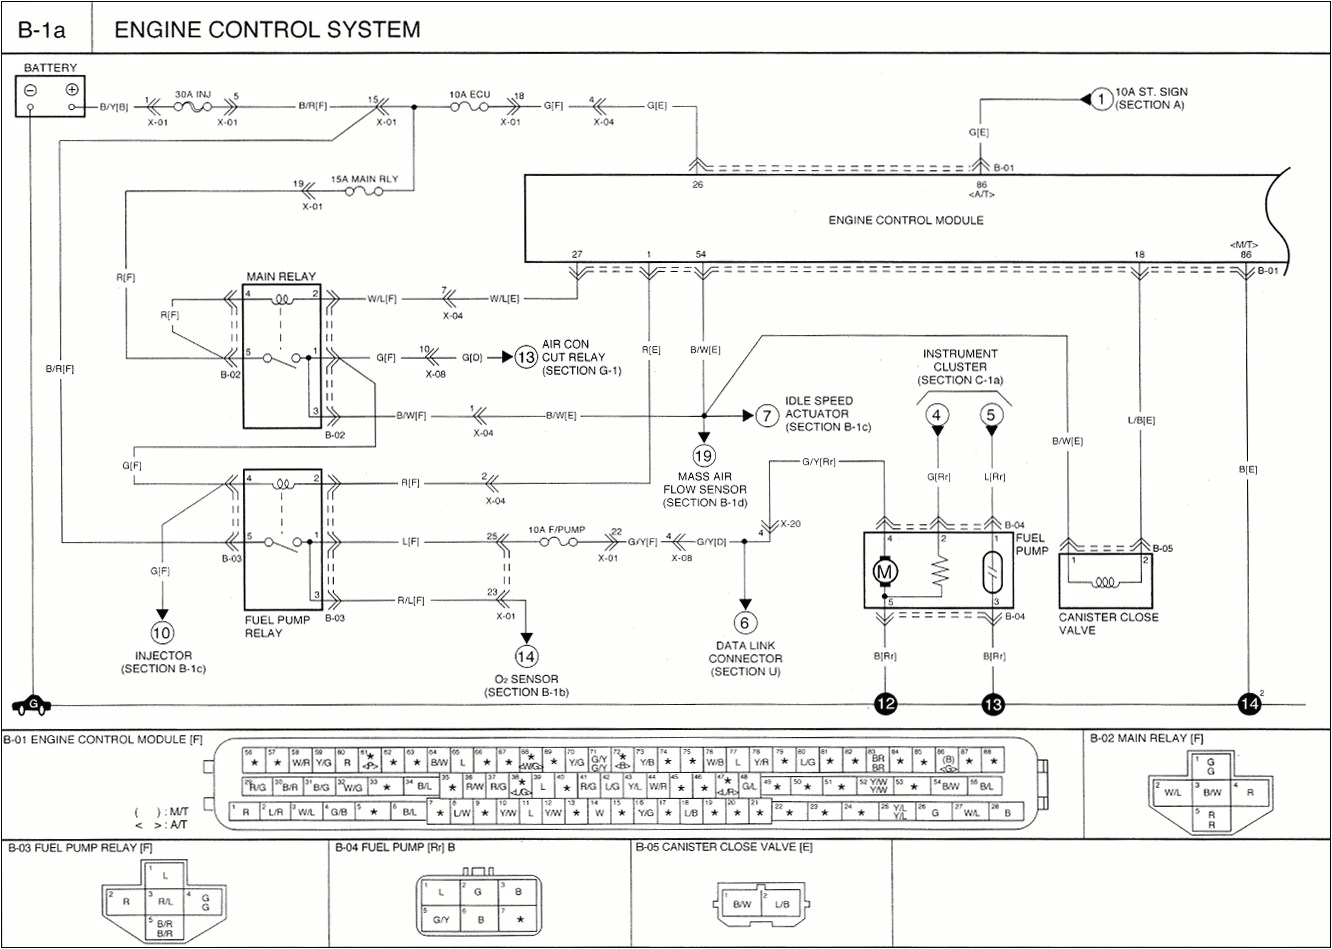 pnoz xv2 wiring diagram beautiful pilz pnoz wiring diagram x1 trusted wiring diagrams e280a2 1 jpg